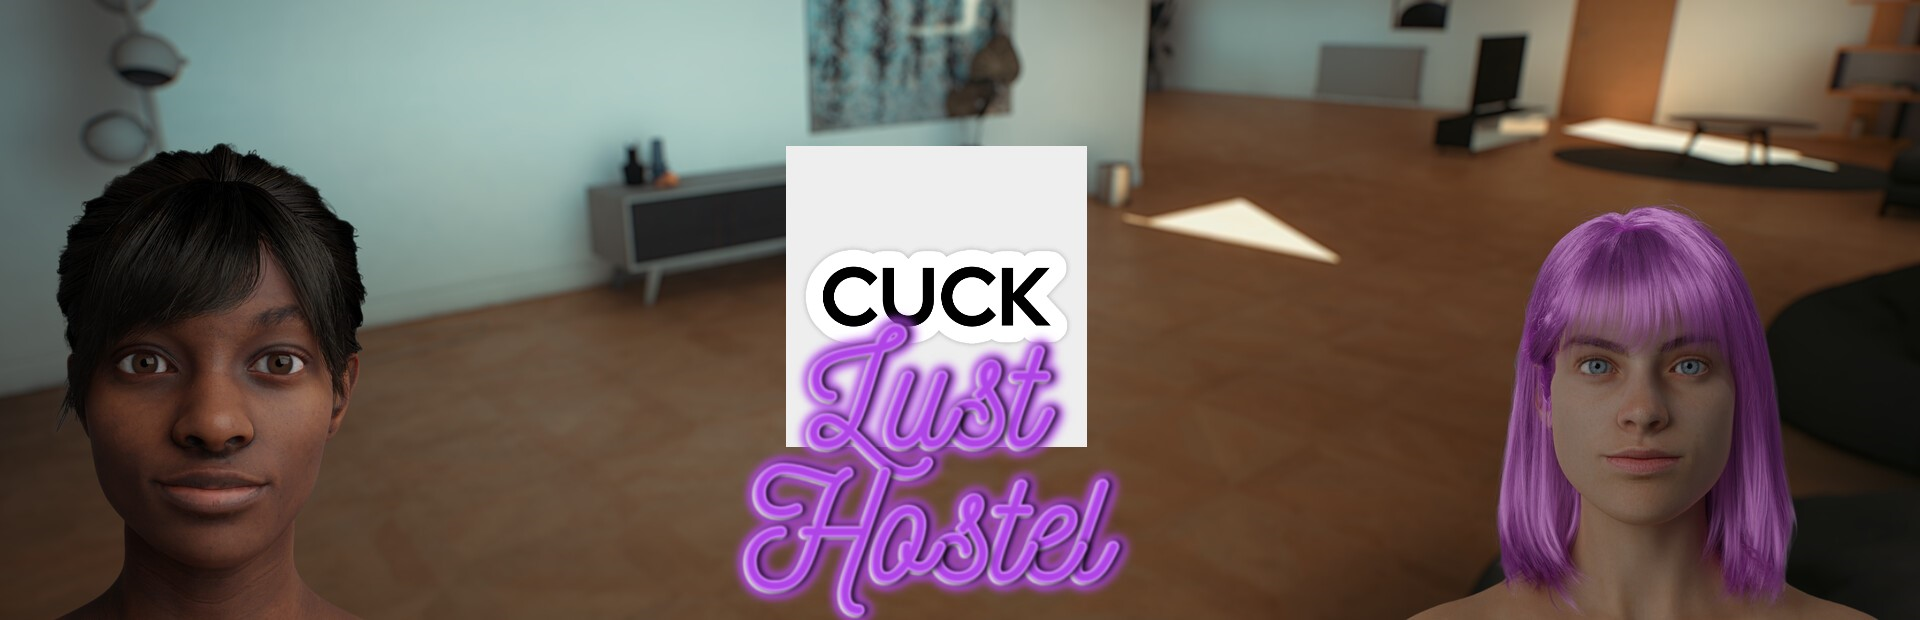 Lust Hostel poster